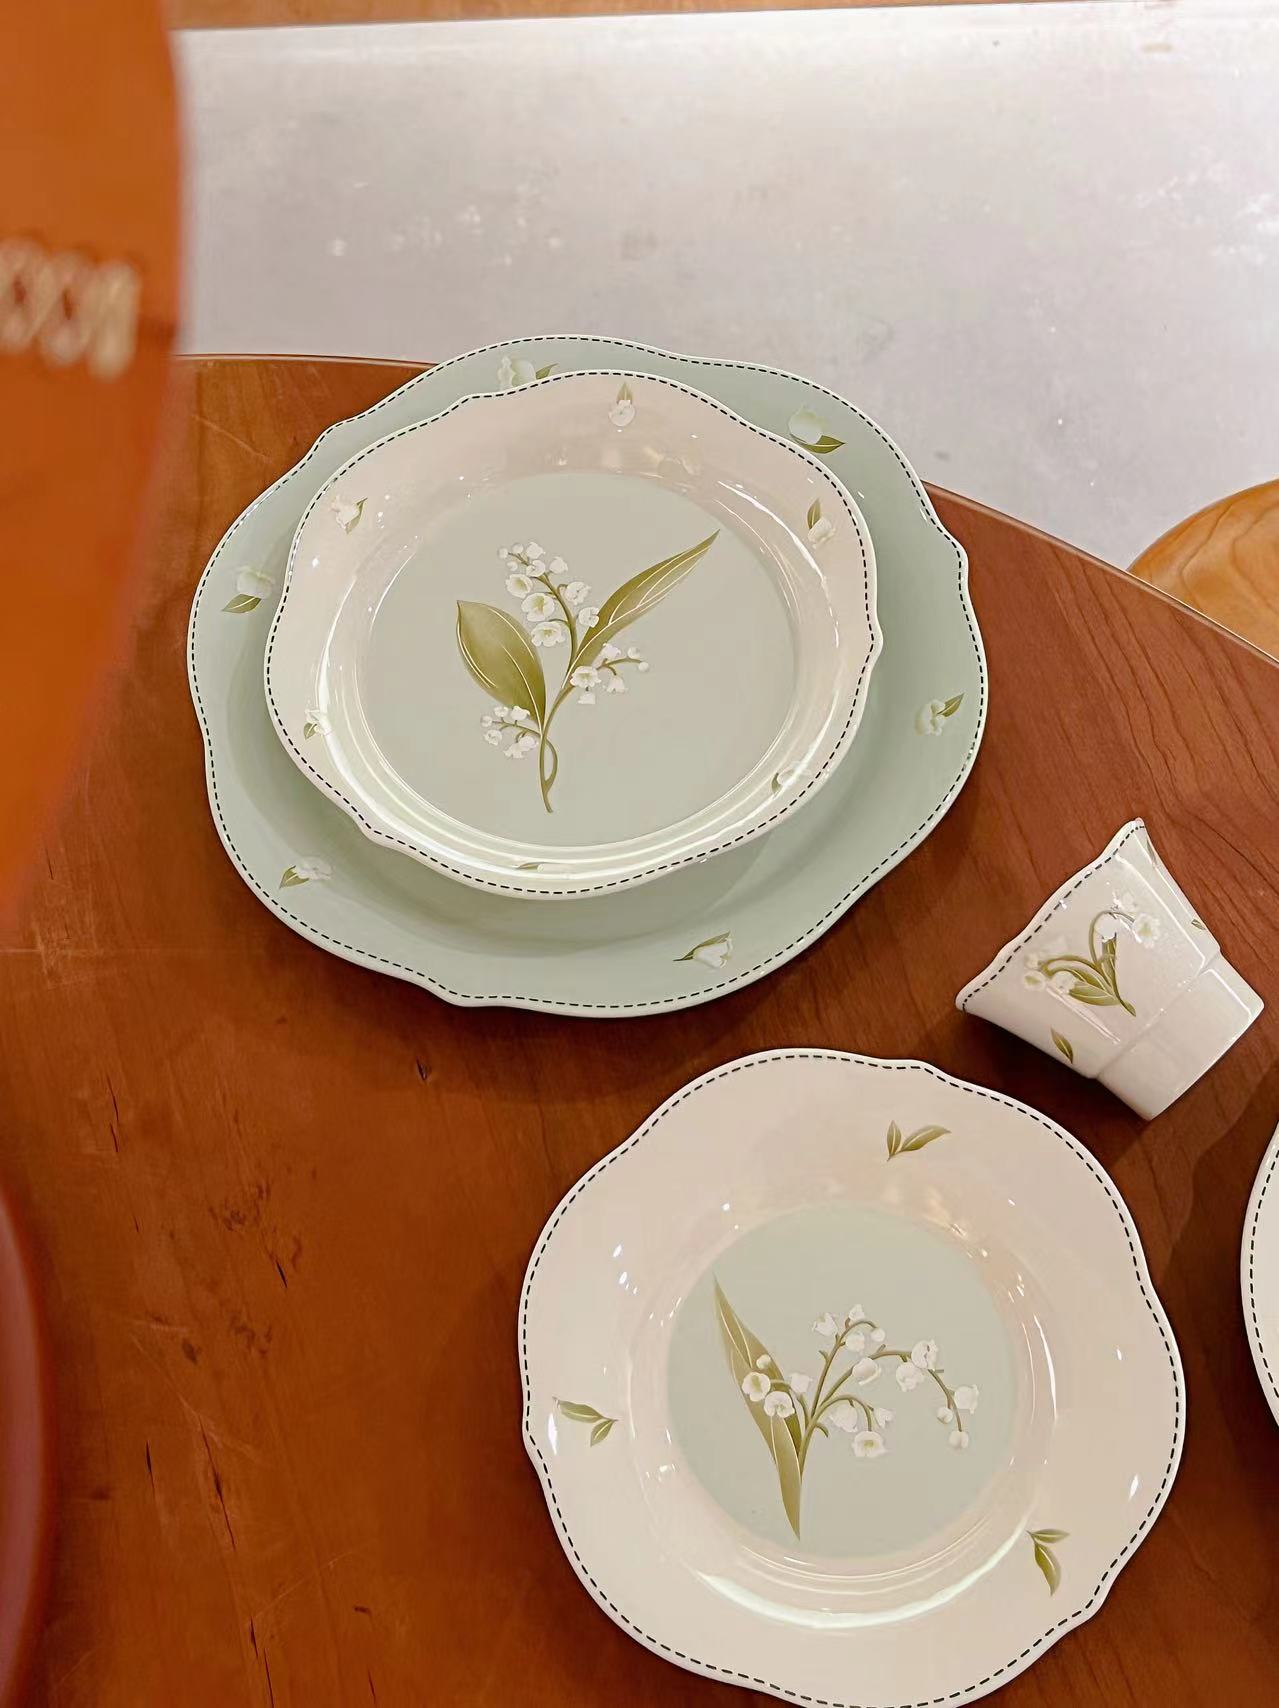 铃兰语餐具温柔家用碗盘套装铃兰花朵图案韩式饭碗蔡盘子面碗鱼盘